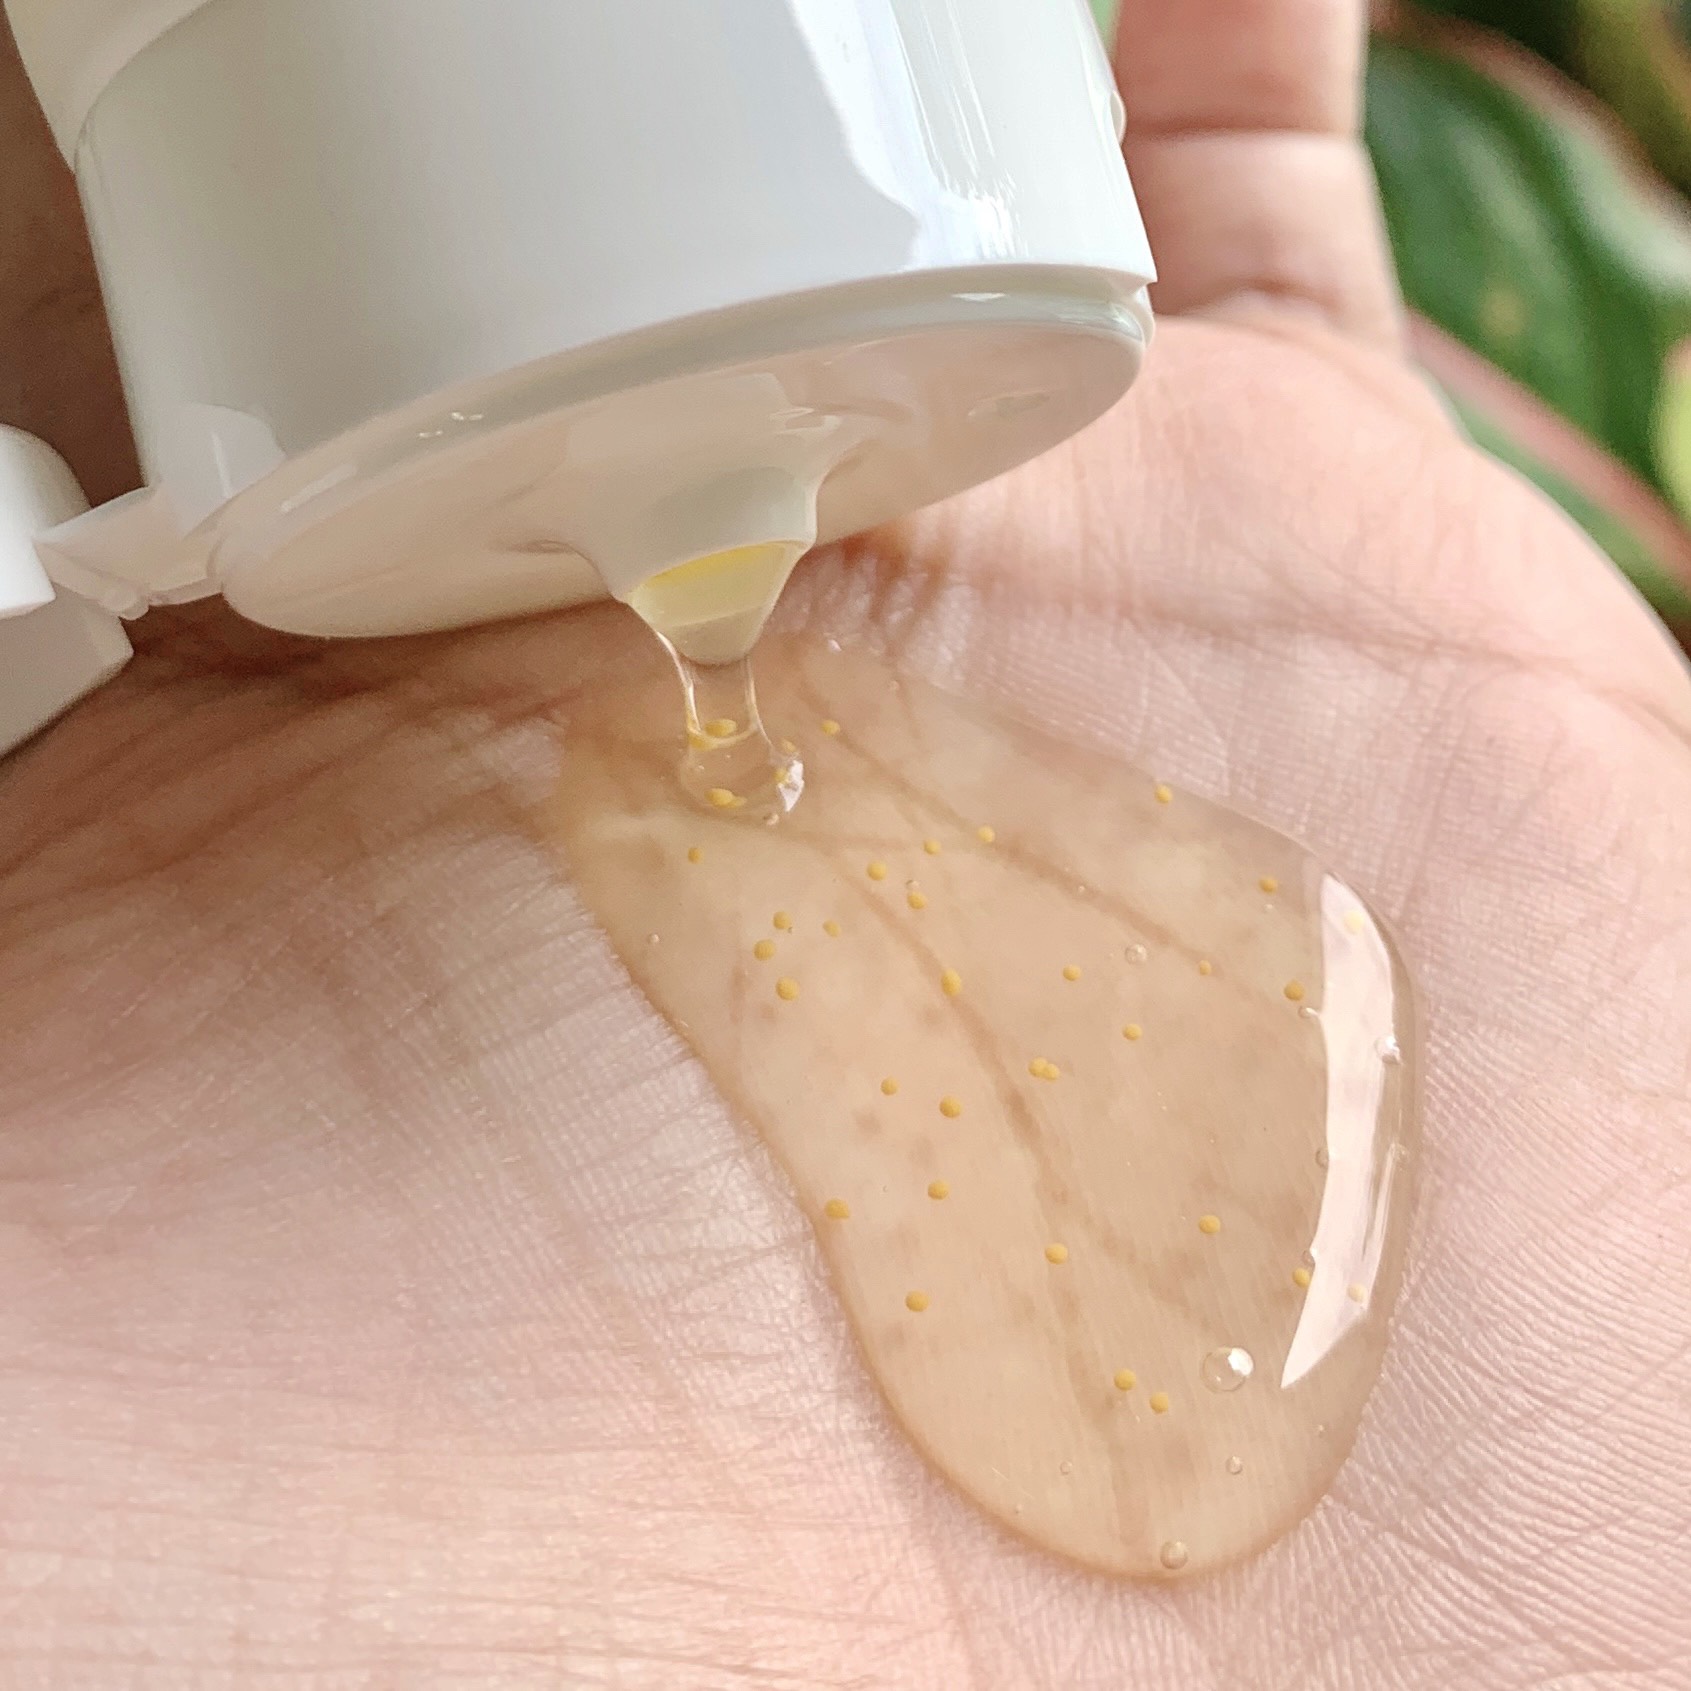 Sữa rửa mặt Sắc Ngọc Khang 100g giúp loại bỏ bụi bẩn và bã nhờn dư thừa, cung cấp các dưỡng chất cho da, giúp da trắng sáng, mịn màng